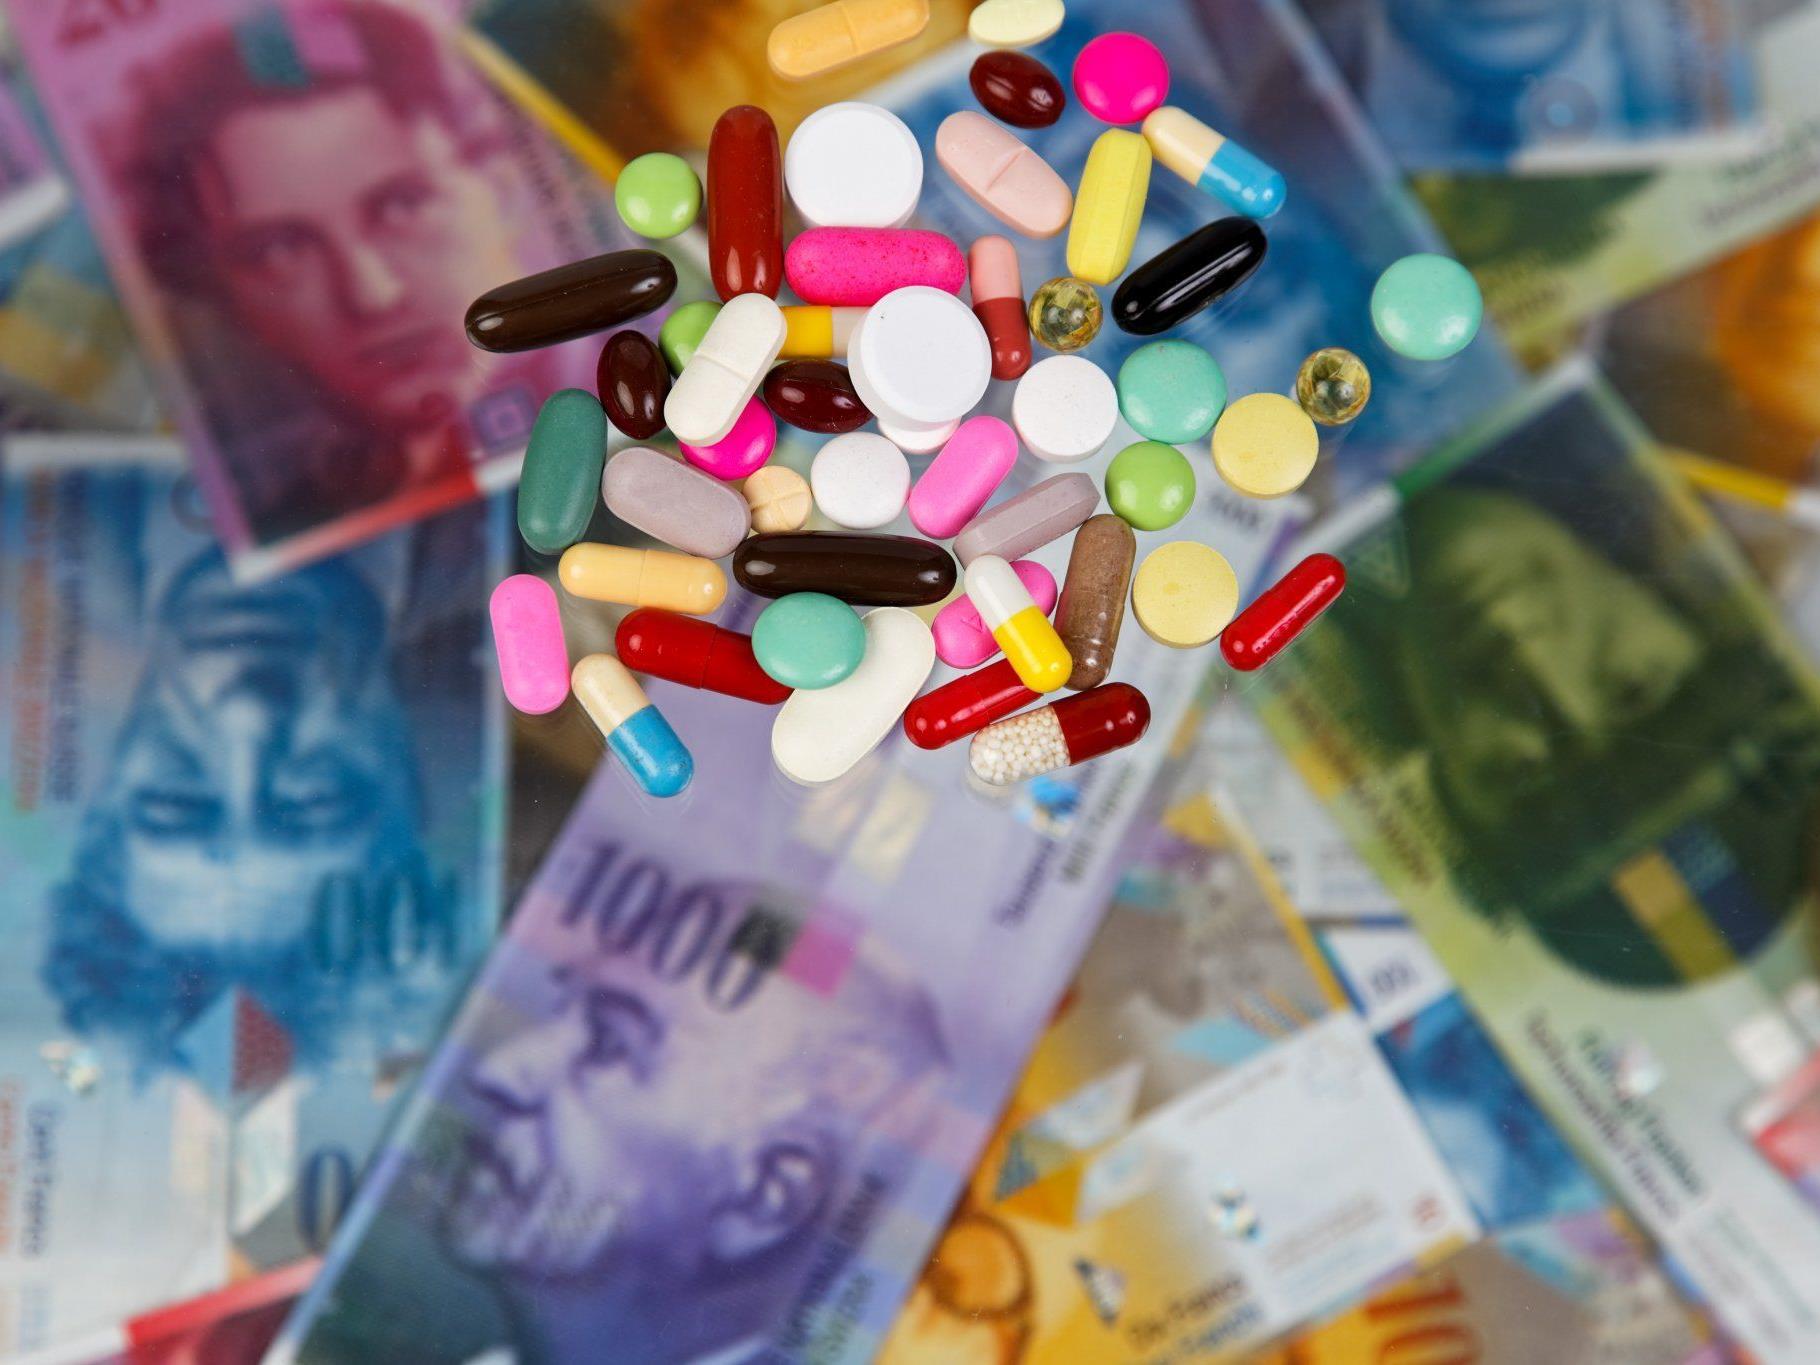 Die Polizei stellte unter anderem mehr als 200 Substitol-Tabletten mit einem Straßenverkaufswert von über 7.000 Euro sicher.